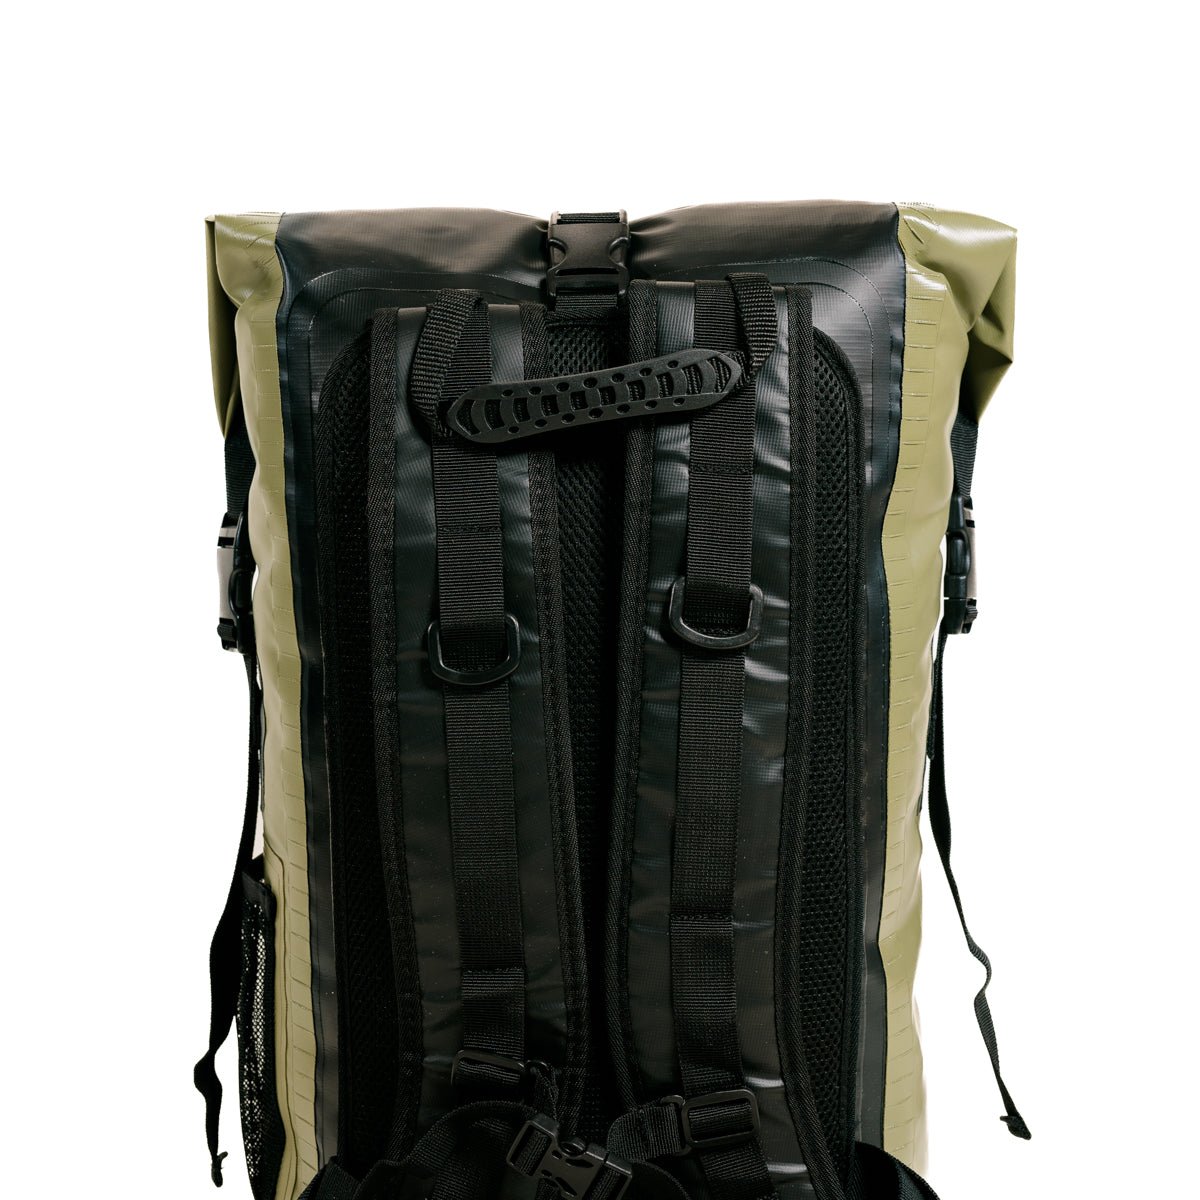 Dry Bag Waterproof Backpack - 30L - Groove Rabbit